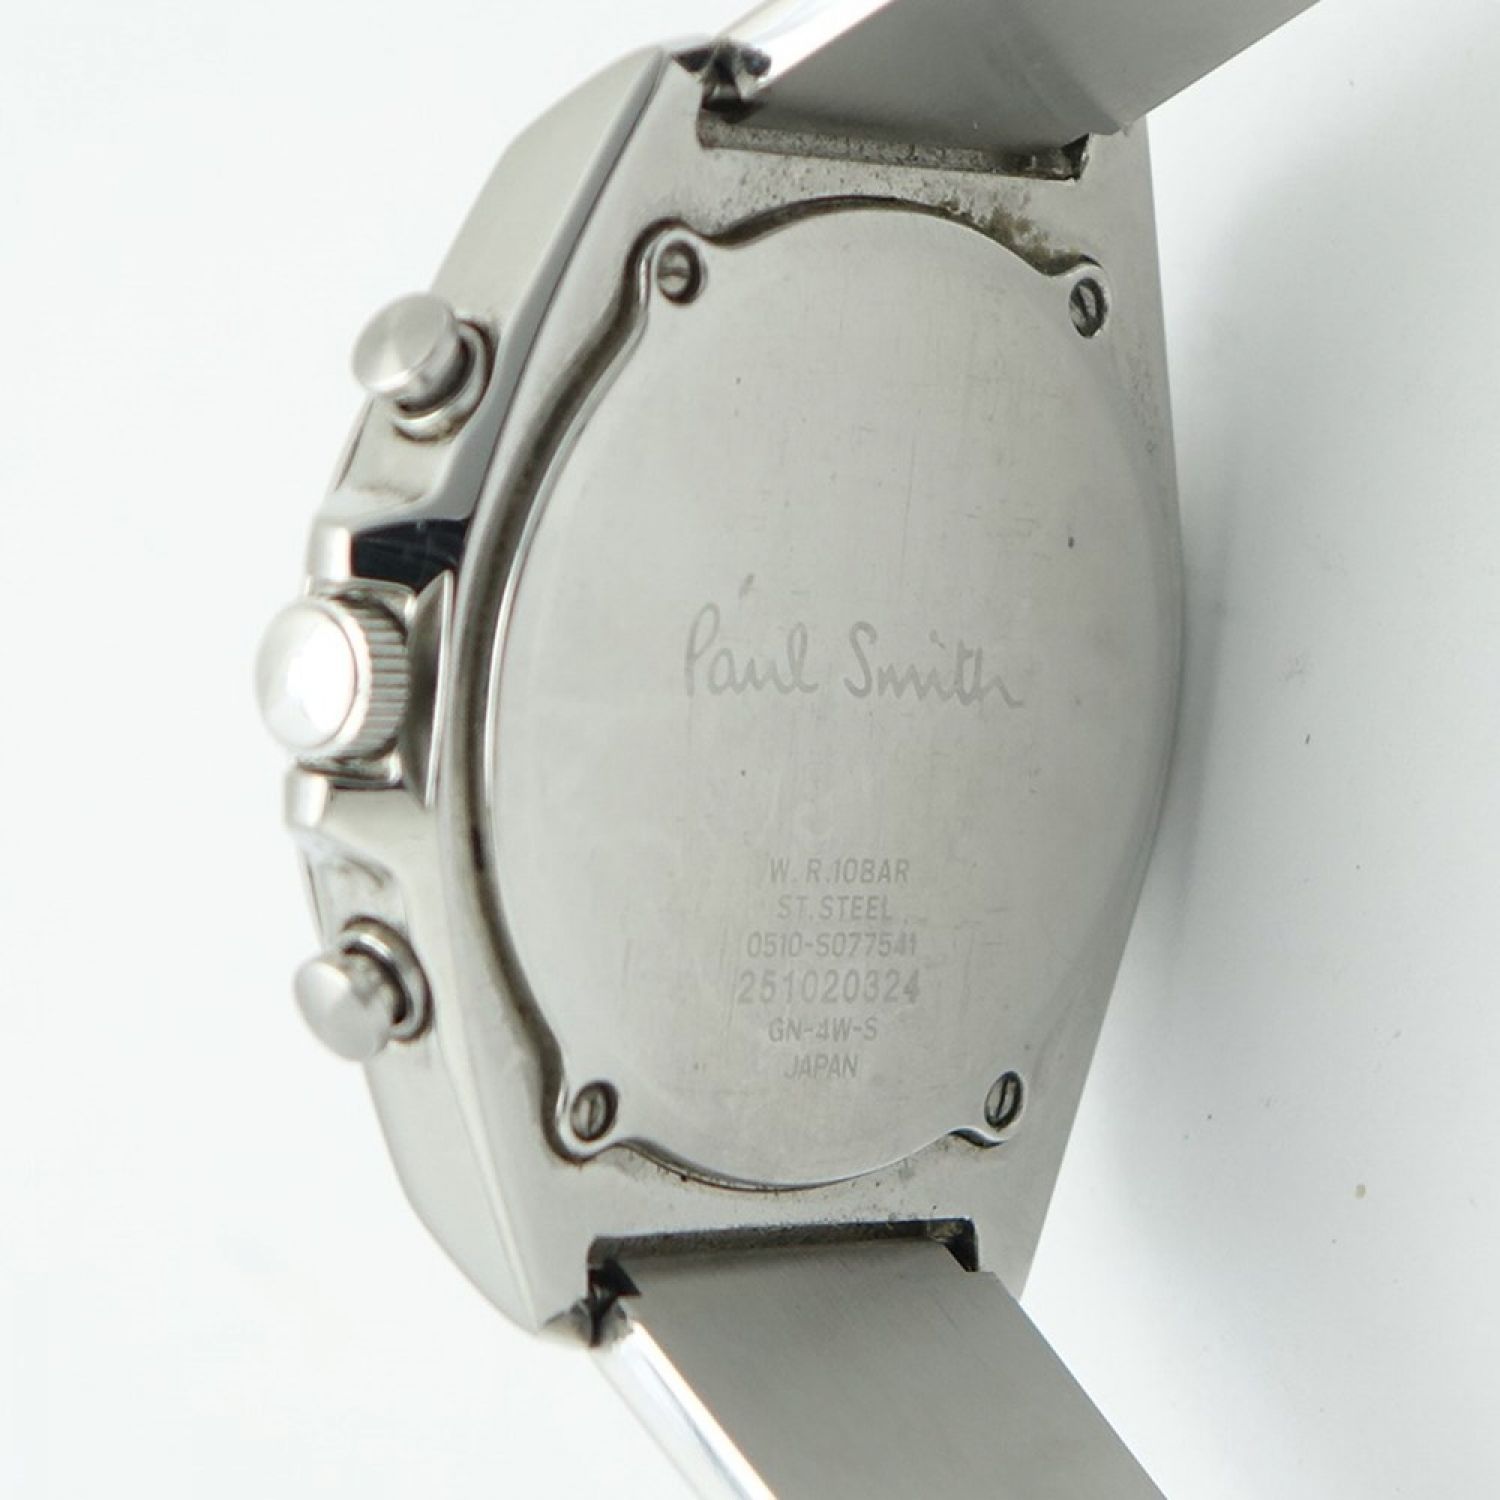 Paul Smith ポールスミス 腕時計 クロノグラフ Gn 4w S 送料無料 Cランク なんでもリサイクルビッグバン オンラインショップ